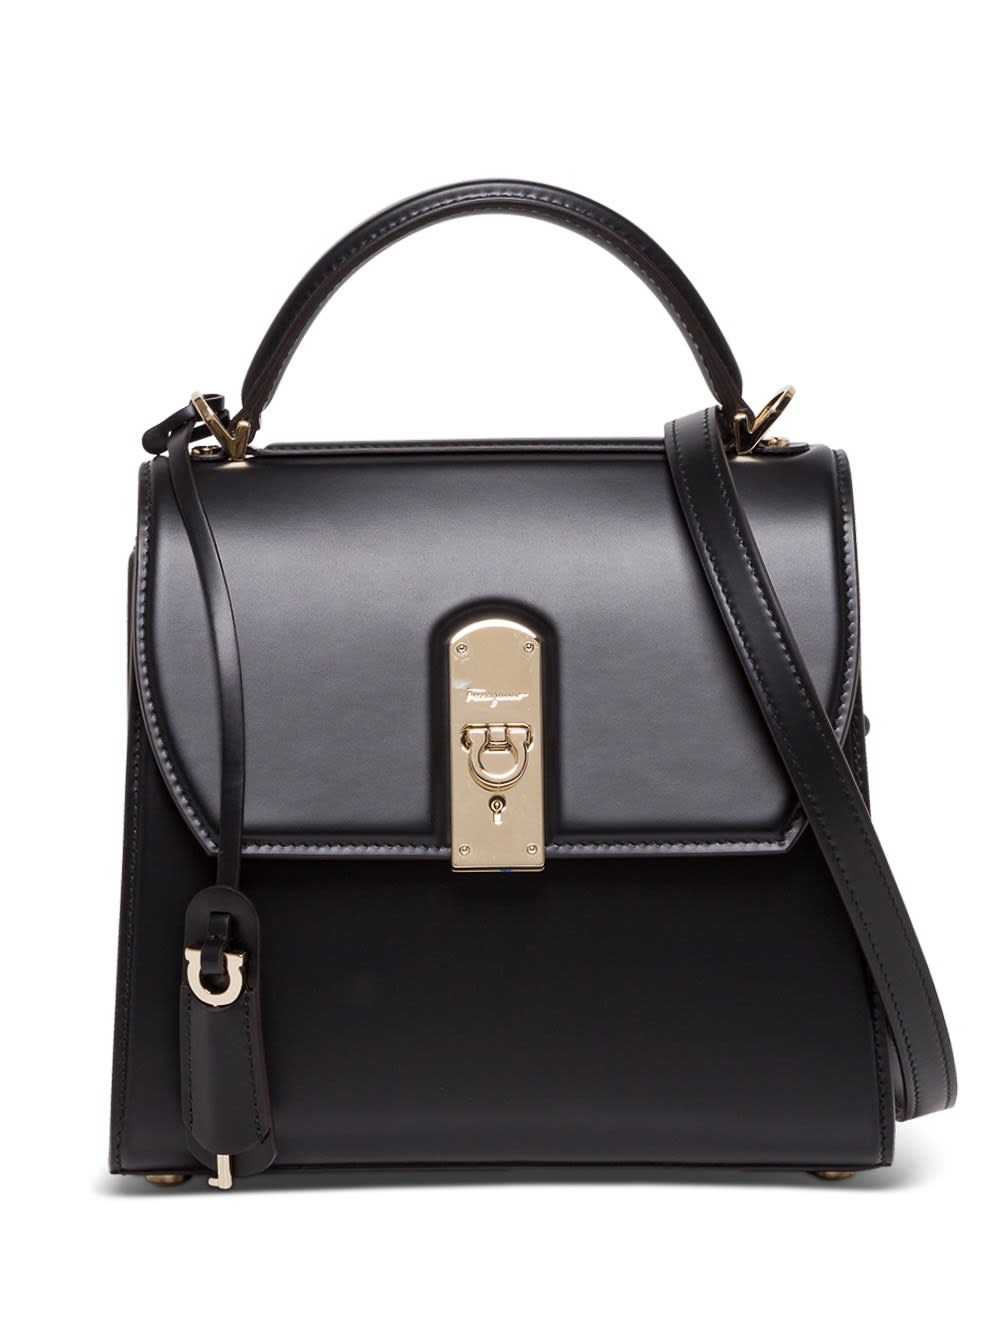 Salvatore Ferragamo Boxy Handbag In Black Leather